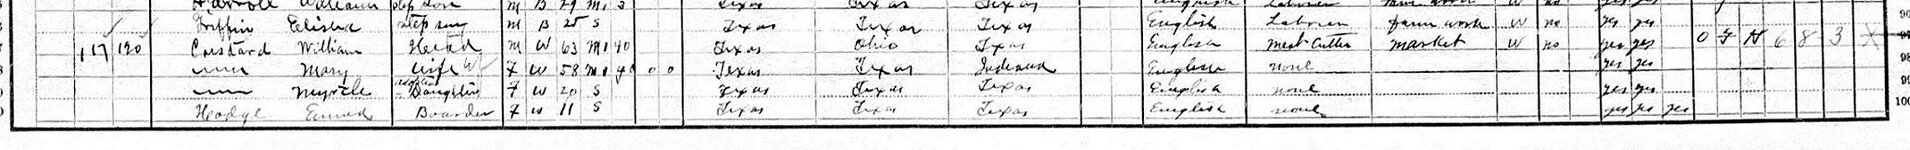 WILLIAM CUSTARD 1910 United States Federal Census Record for William Custard x.jpg